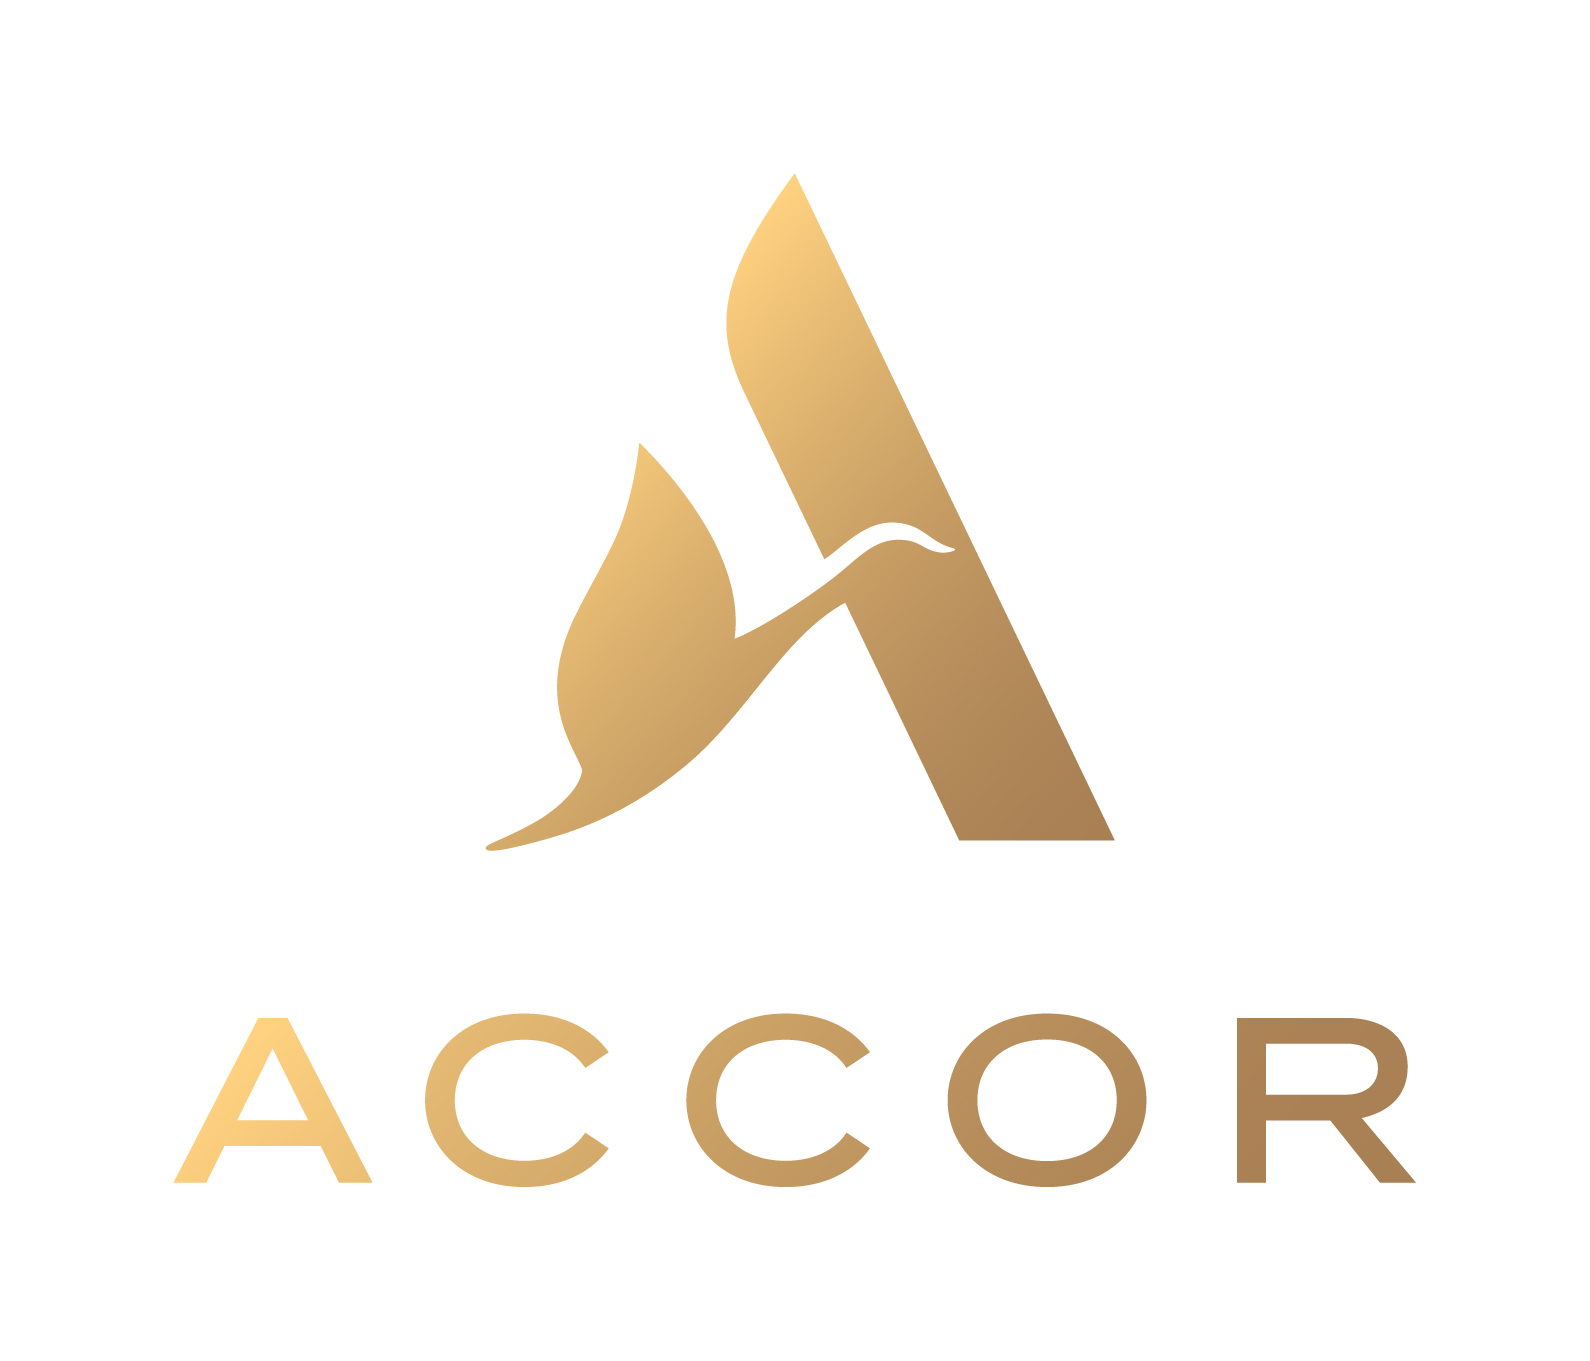 
Accor Hotels